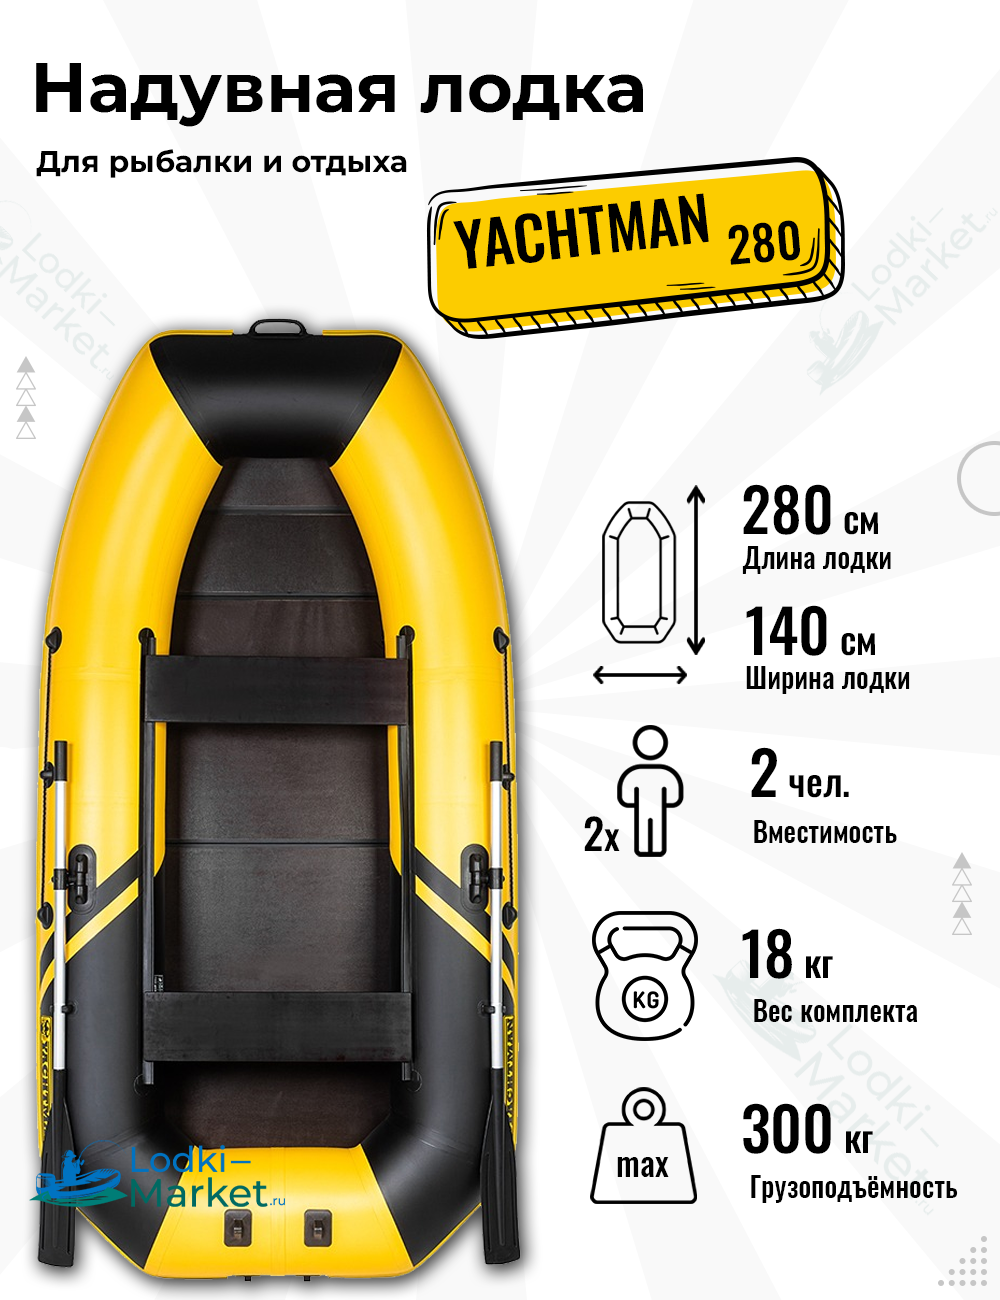 Надувная лодка YACHTMAN 280 (Яхтман) желтый-черный (лодка ПВХ с усилением)купить в Дзержинске по цене 23 200 р. с доставкой: фото, отзывы